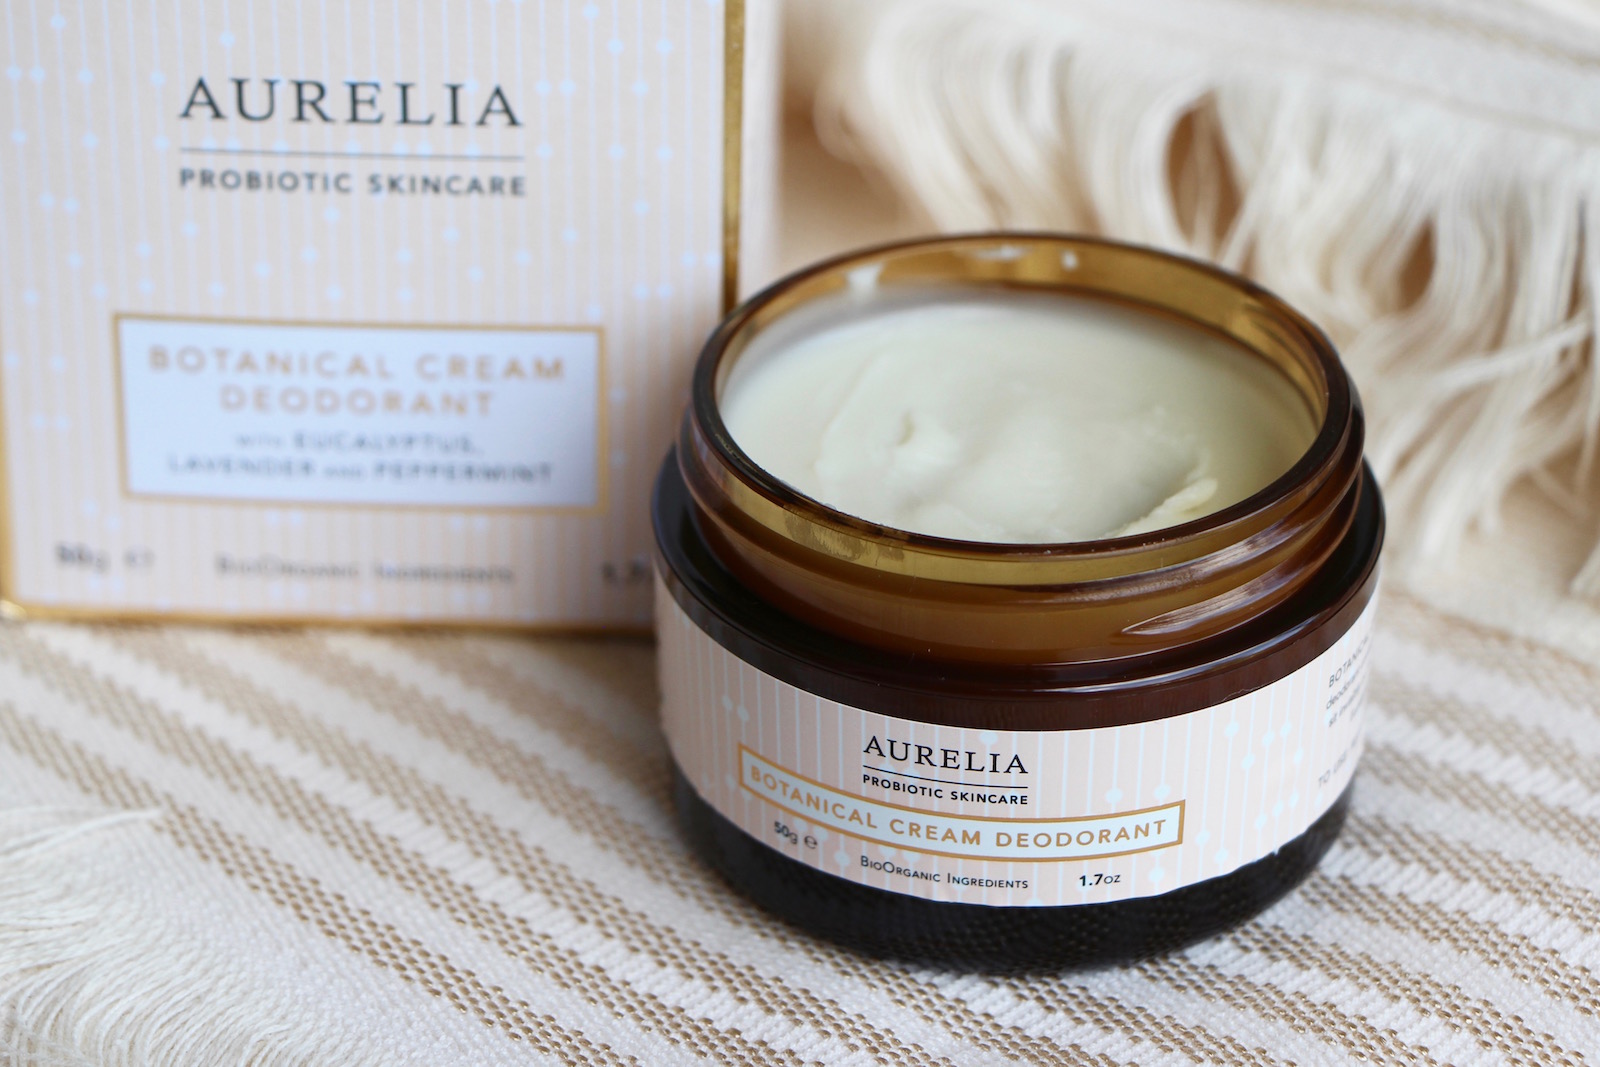 Aurelia Botanical Cream Deodorant